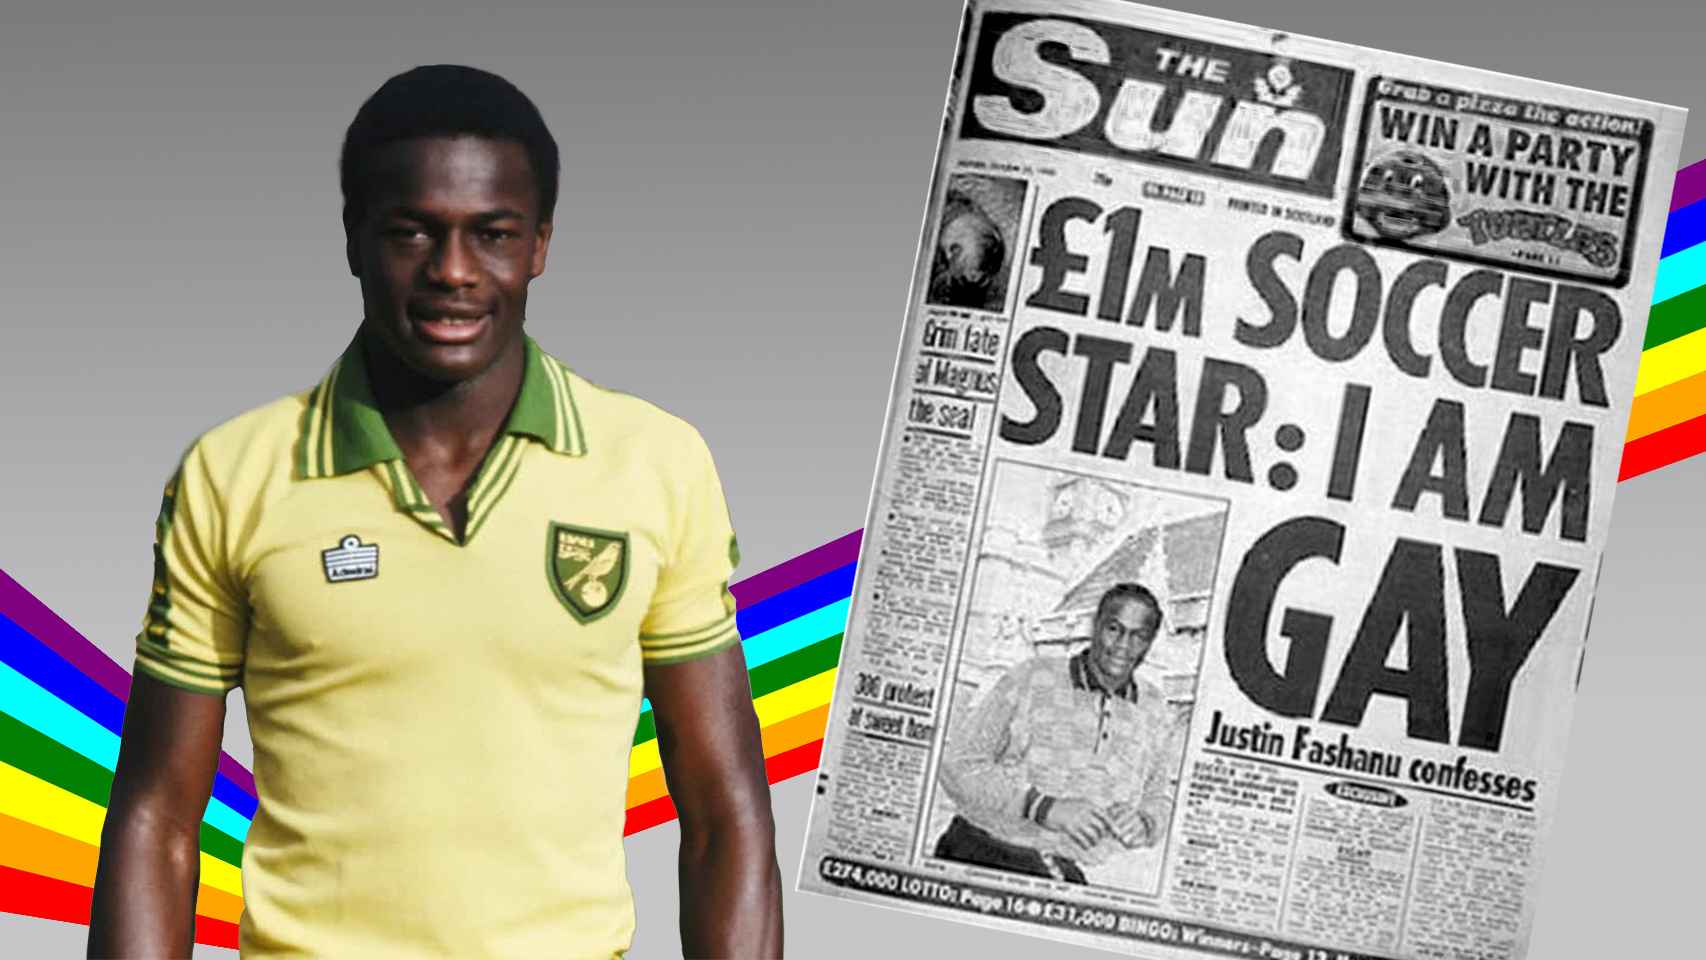 Fashanu, el futbolista del millón de libras que se declaró gay en los 90 y acabó suicidándose